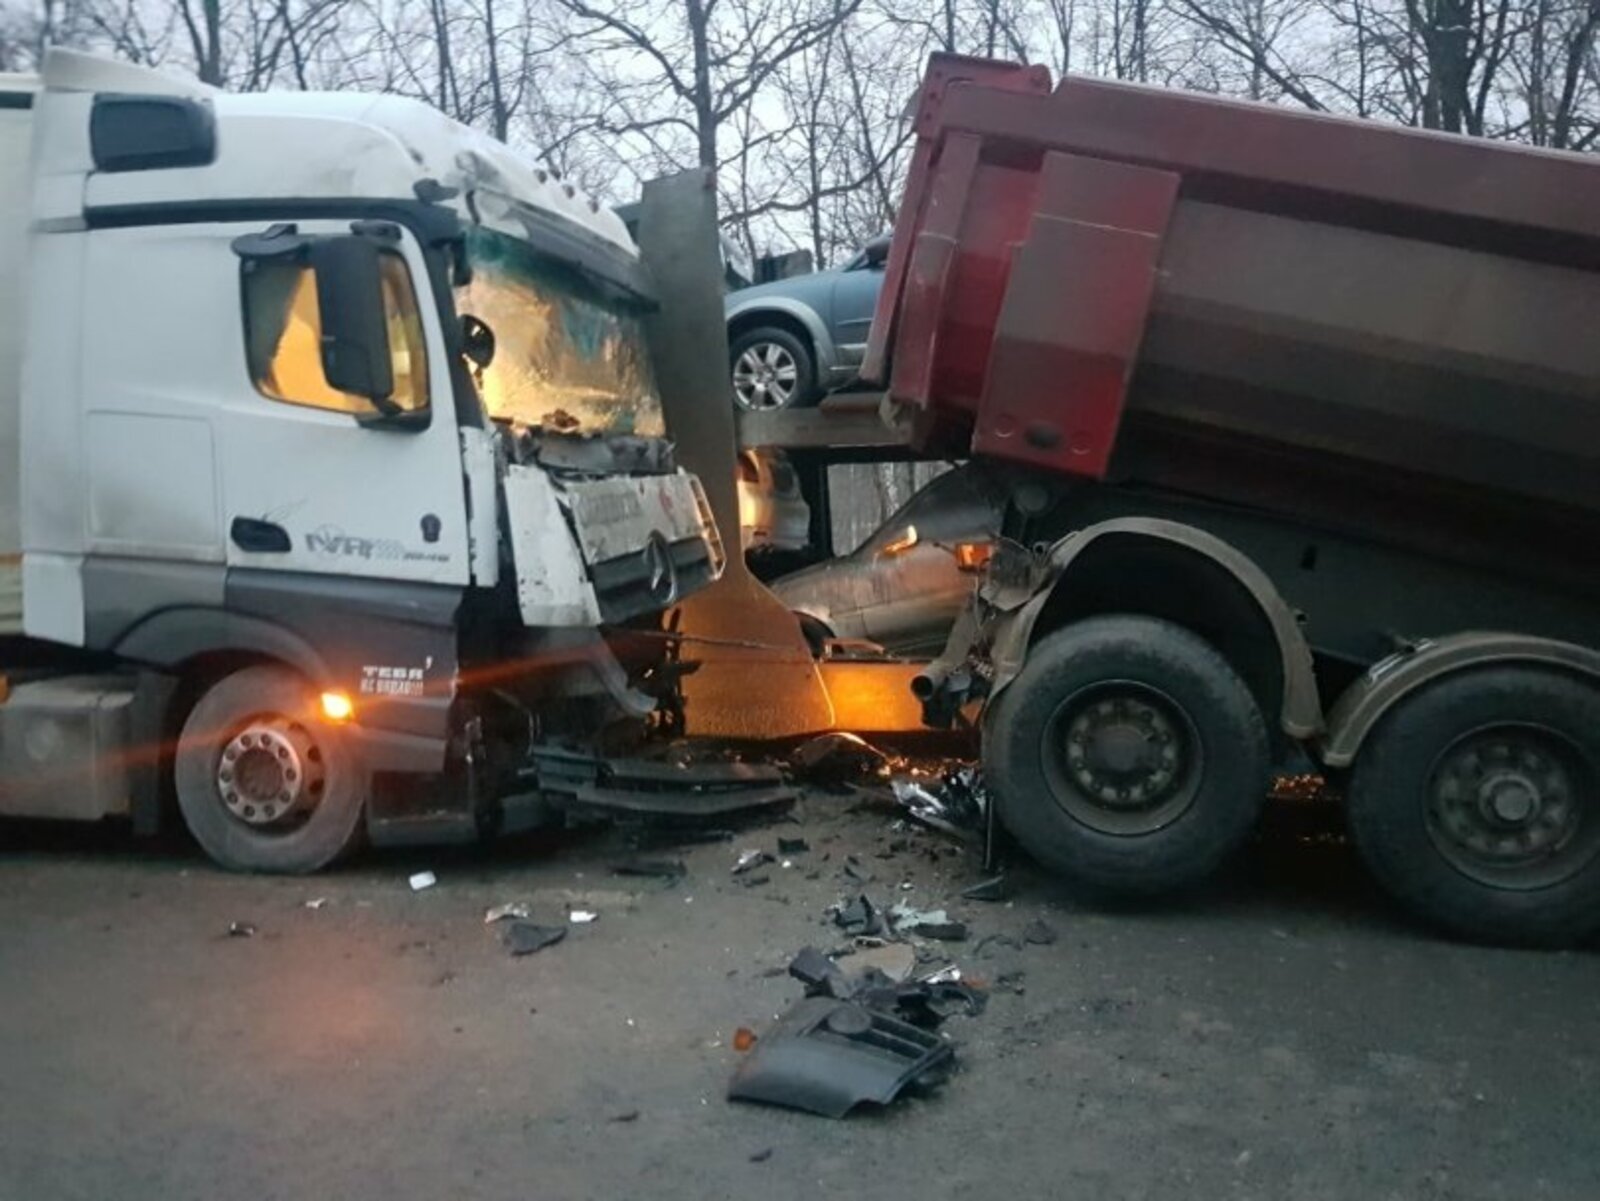 Сегодня, 18 декабря, в Иглинском районе республики произошло ДТП с участием четырех грузовиков